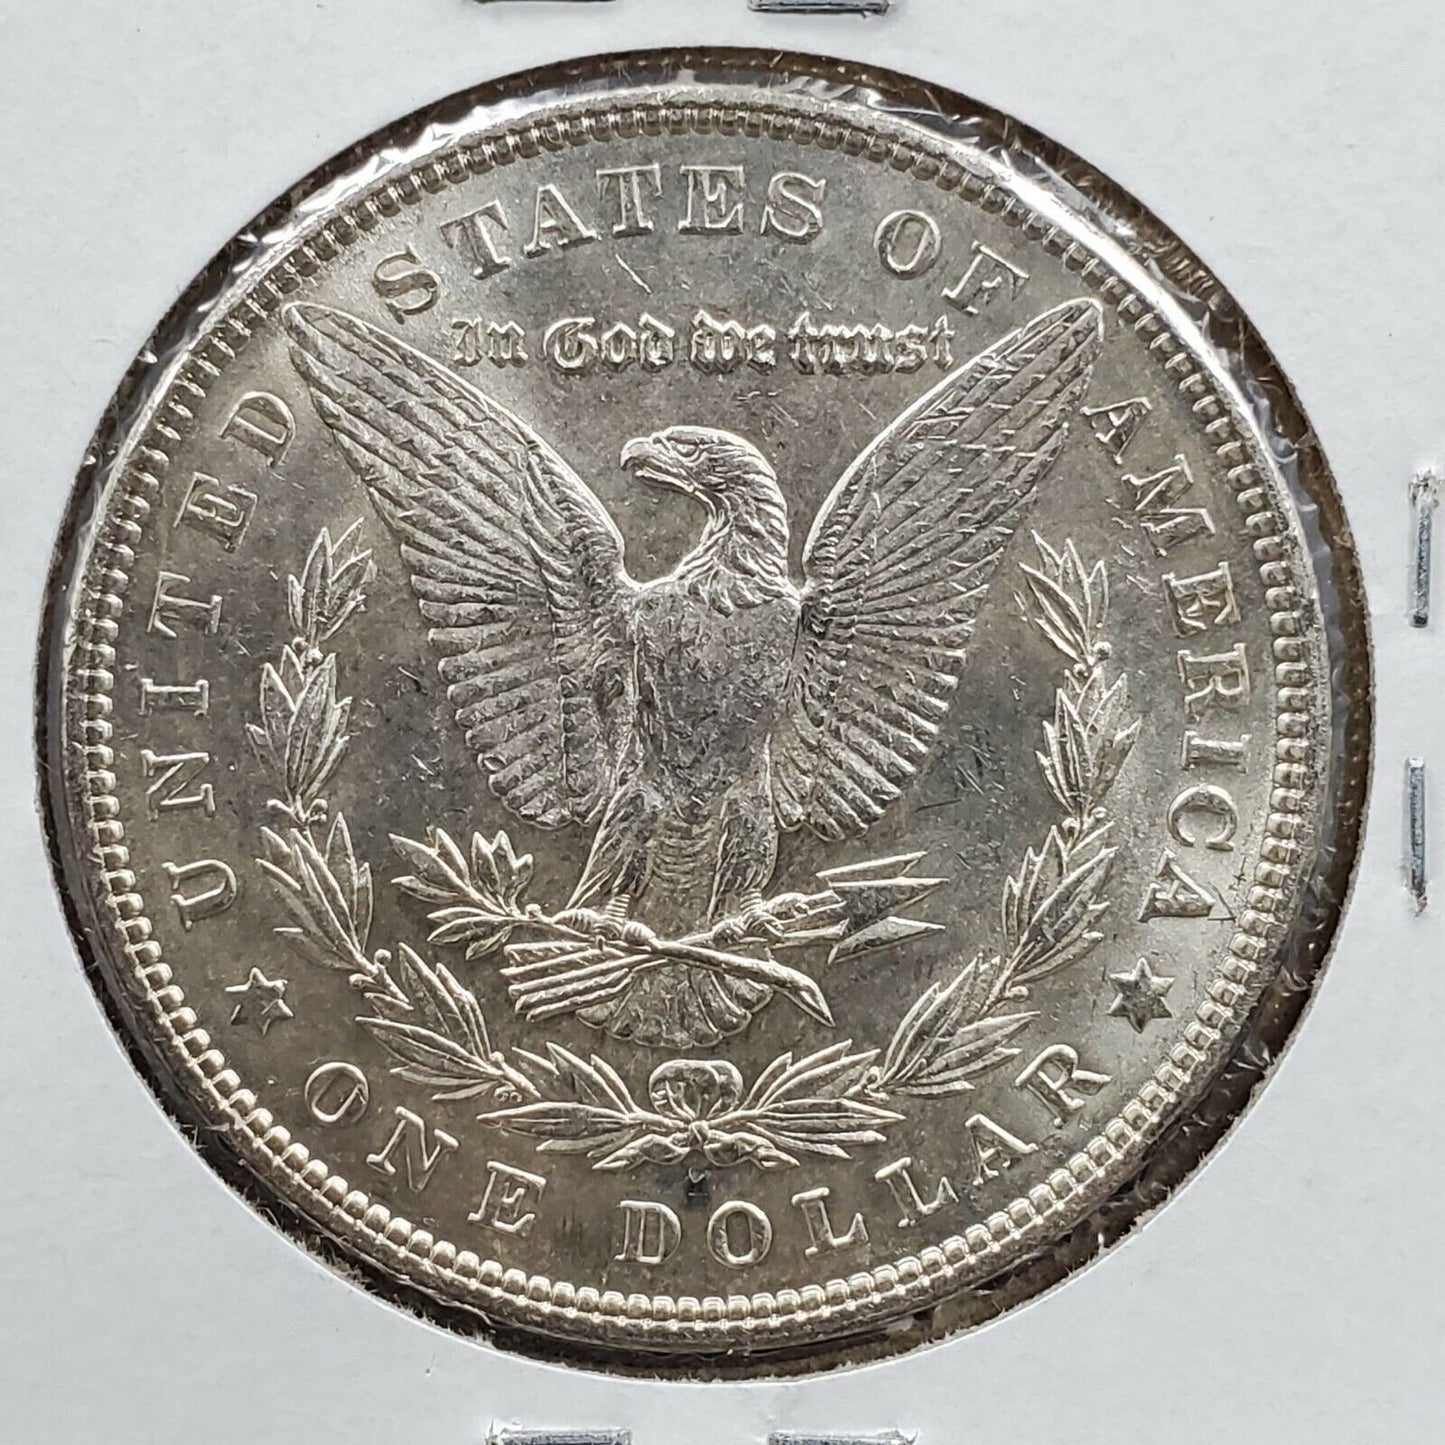 1903 P Morgan Silver Eagle Dollar Coin BU Uncirculated Some Toning Nice Coin